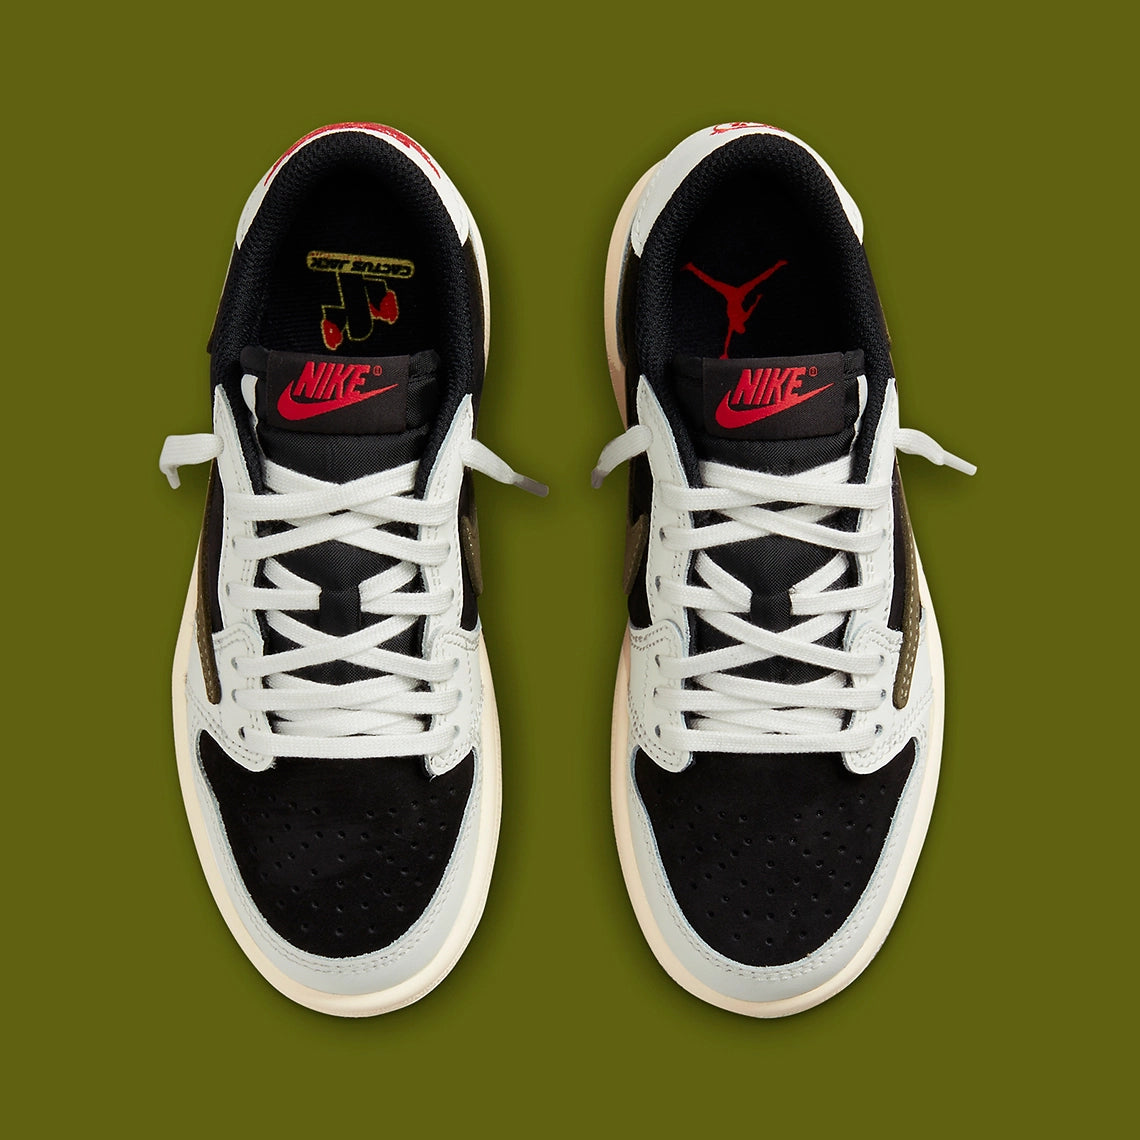 Air Jordan 1 Low 'Travis Scott' Shoes - Size 10